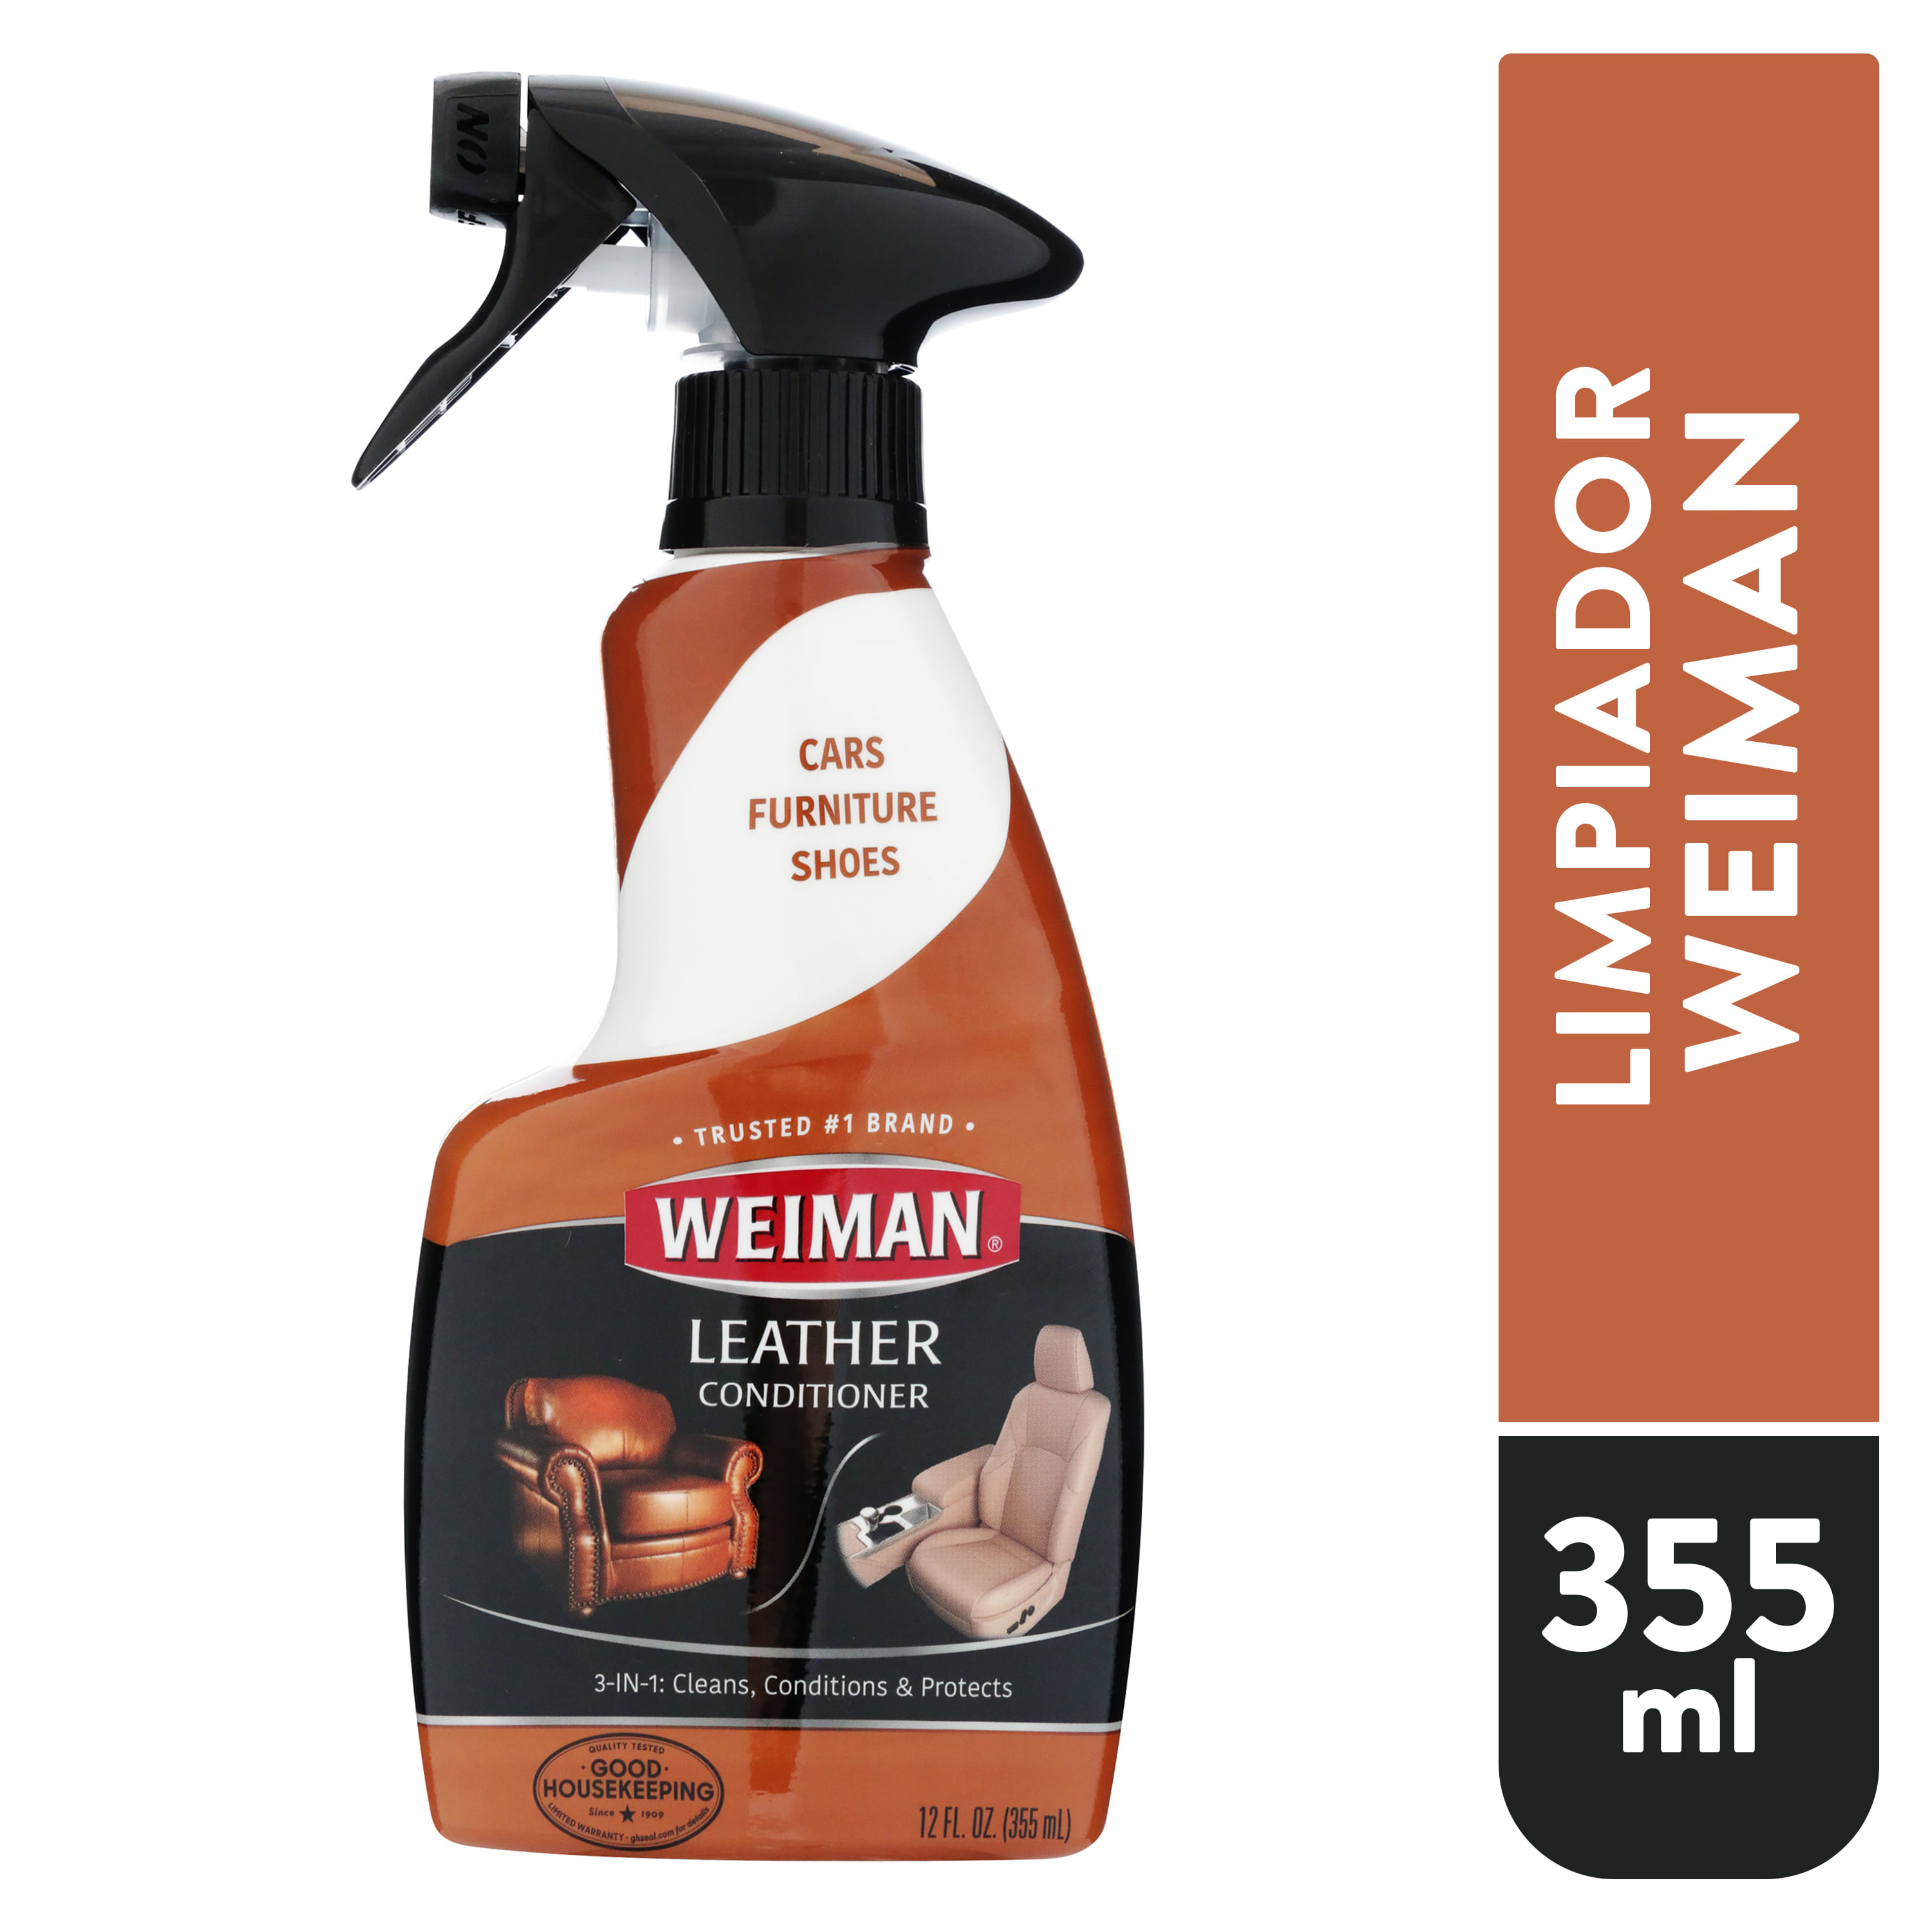 Weiman Limpiador y acondicionador de cuero para usar en tu sofá, silla,  bolso, cartera, zapatos, botas, cinturón de silla de montar, chaqueta para